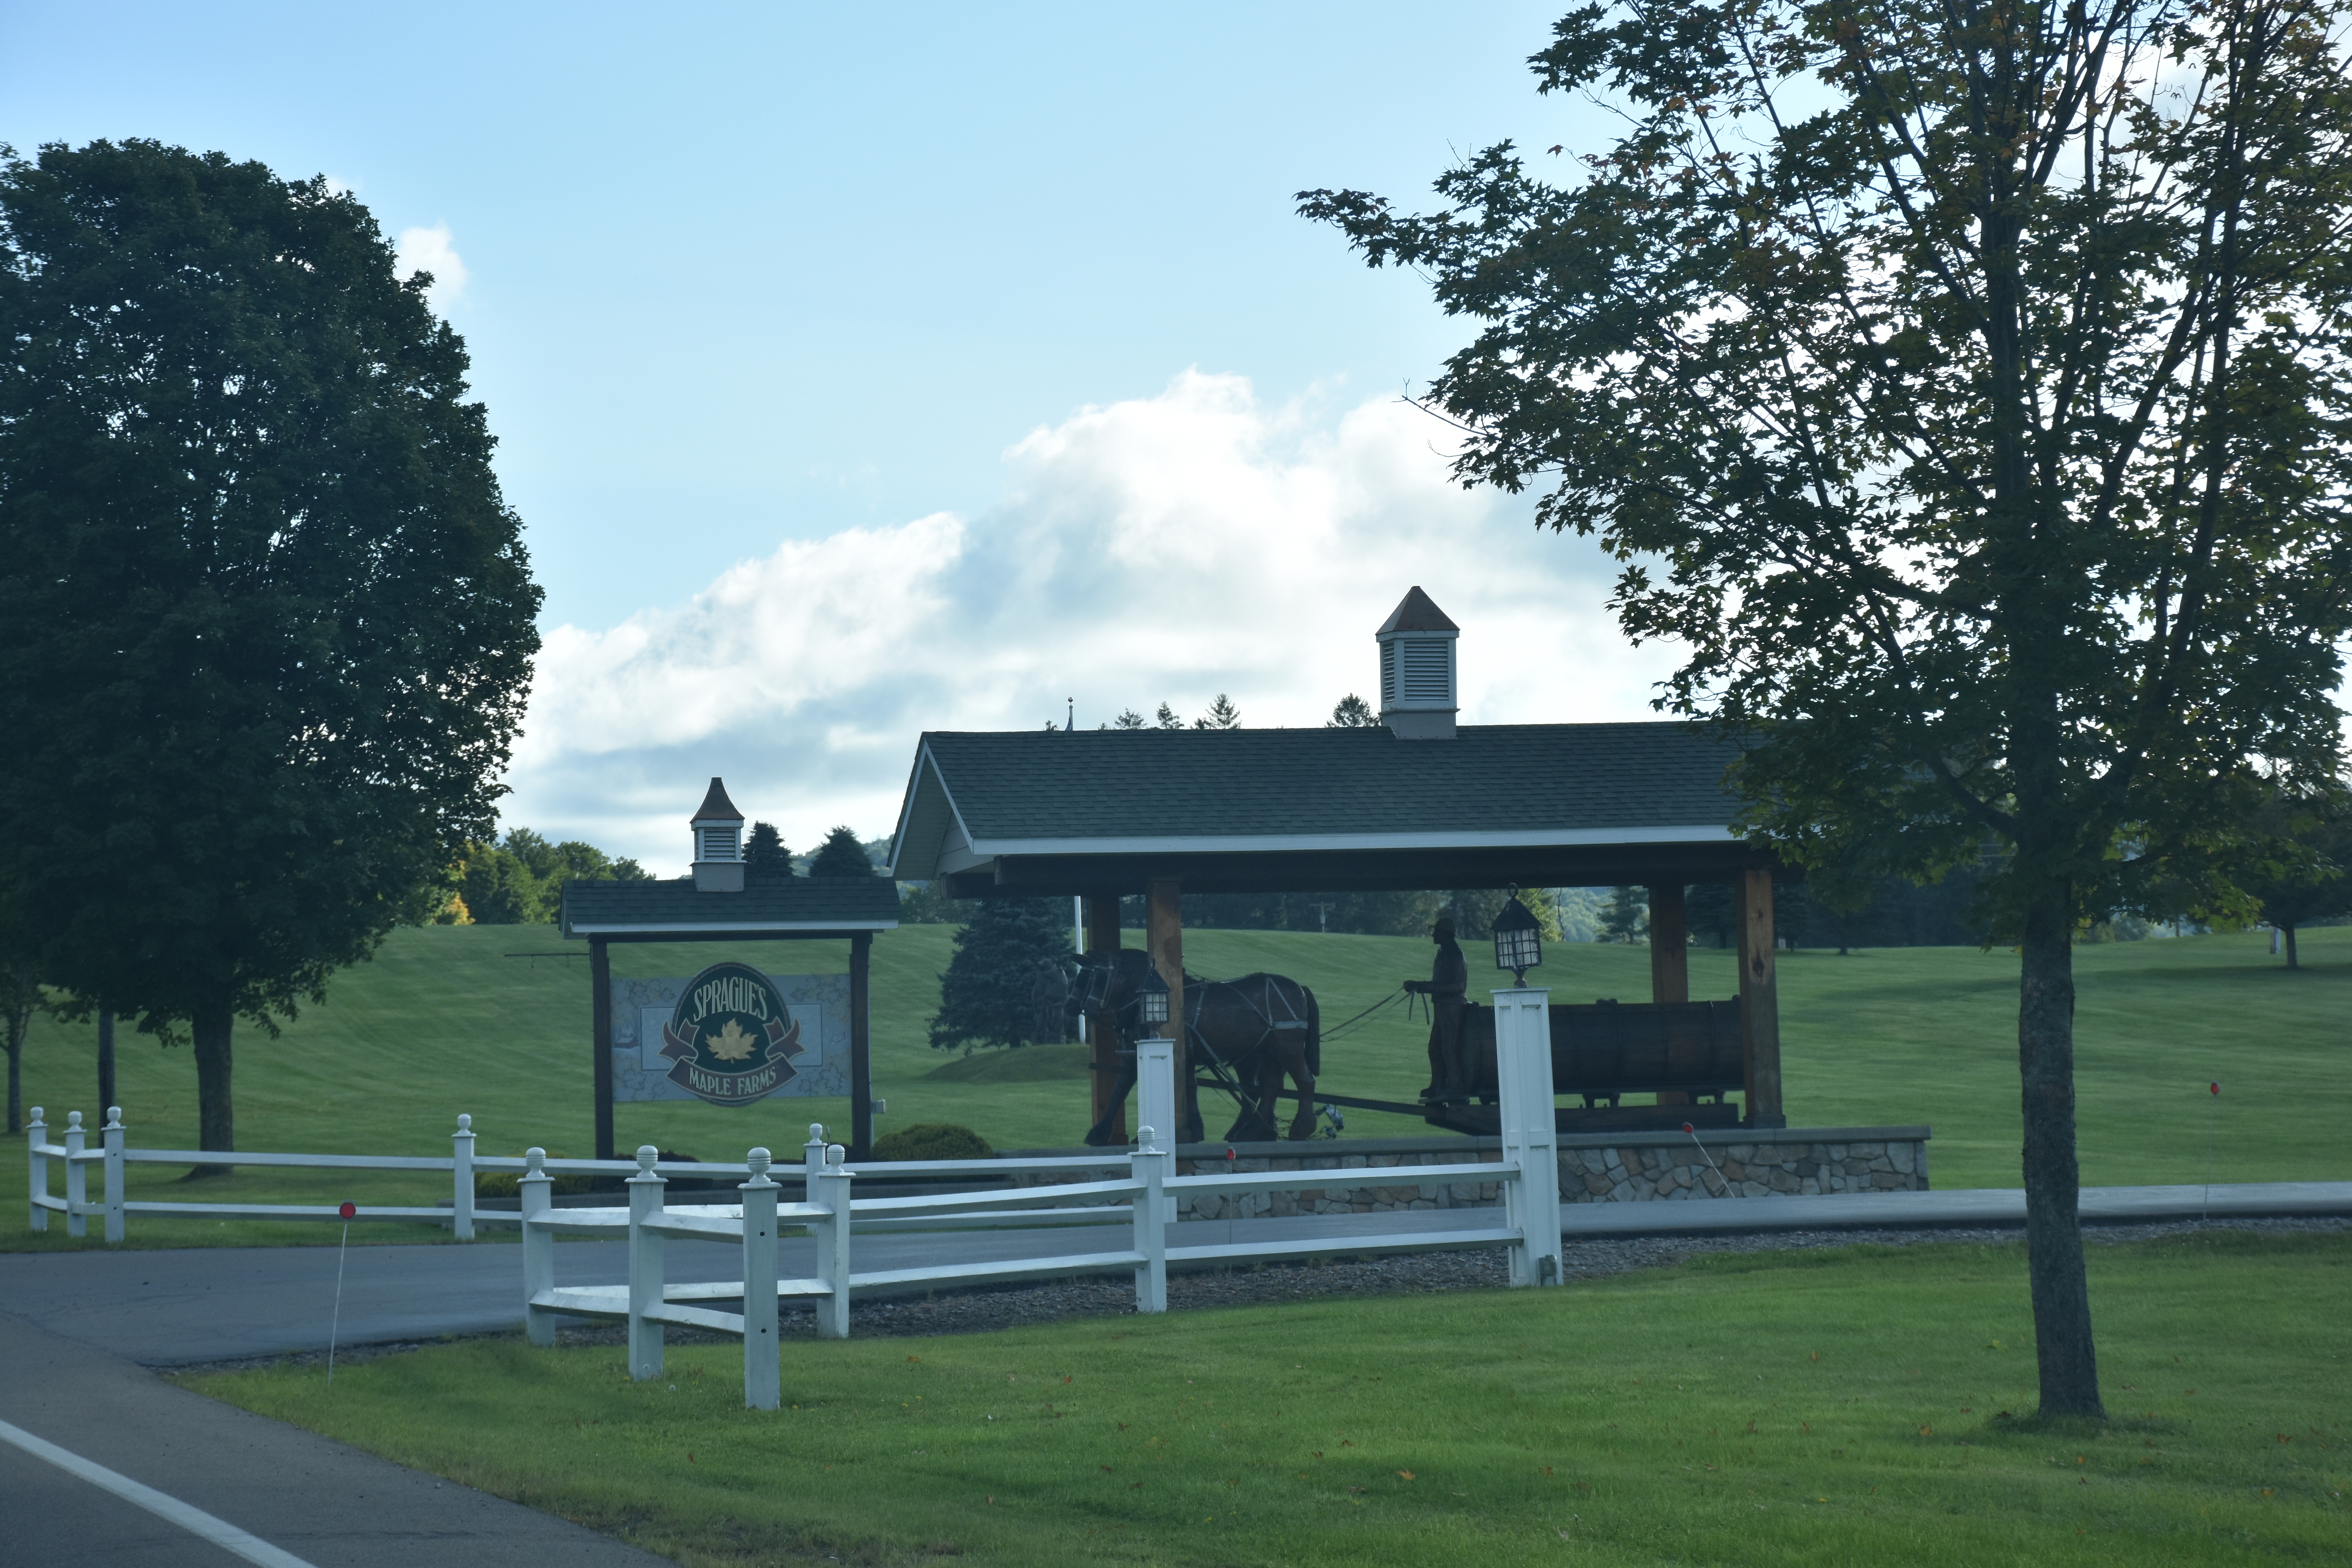 Sprague's Maple Farm's Entrance